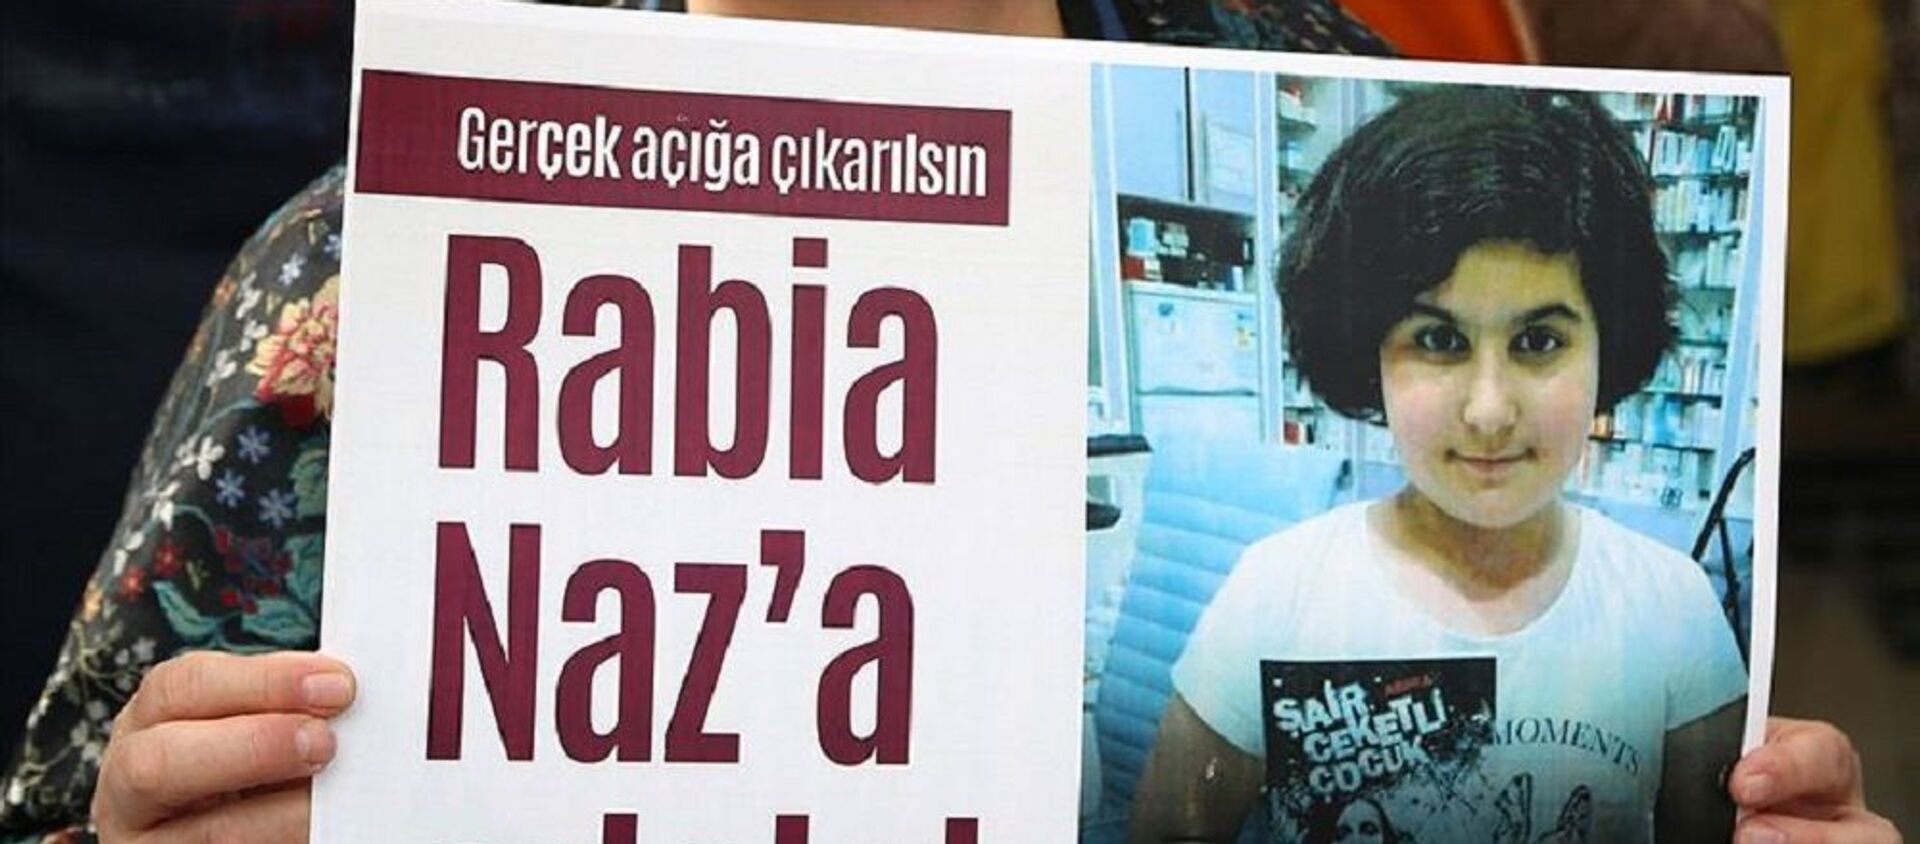 Rabia Naz - Sputnik Türkiye, 1920, 17.09.2020